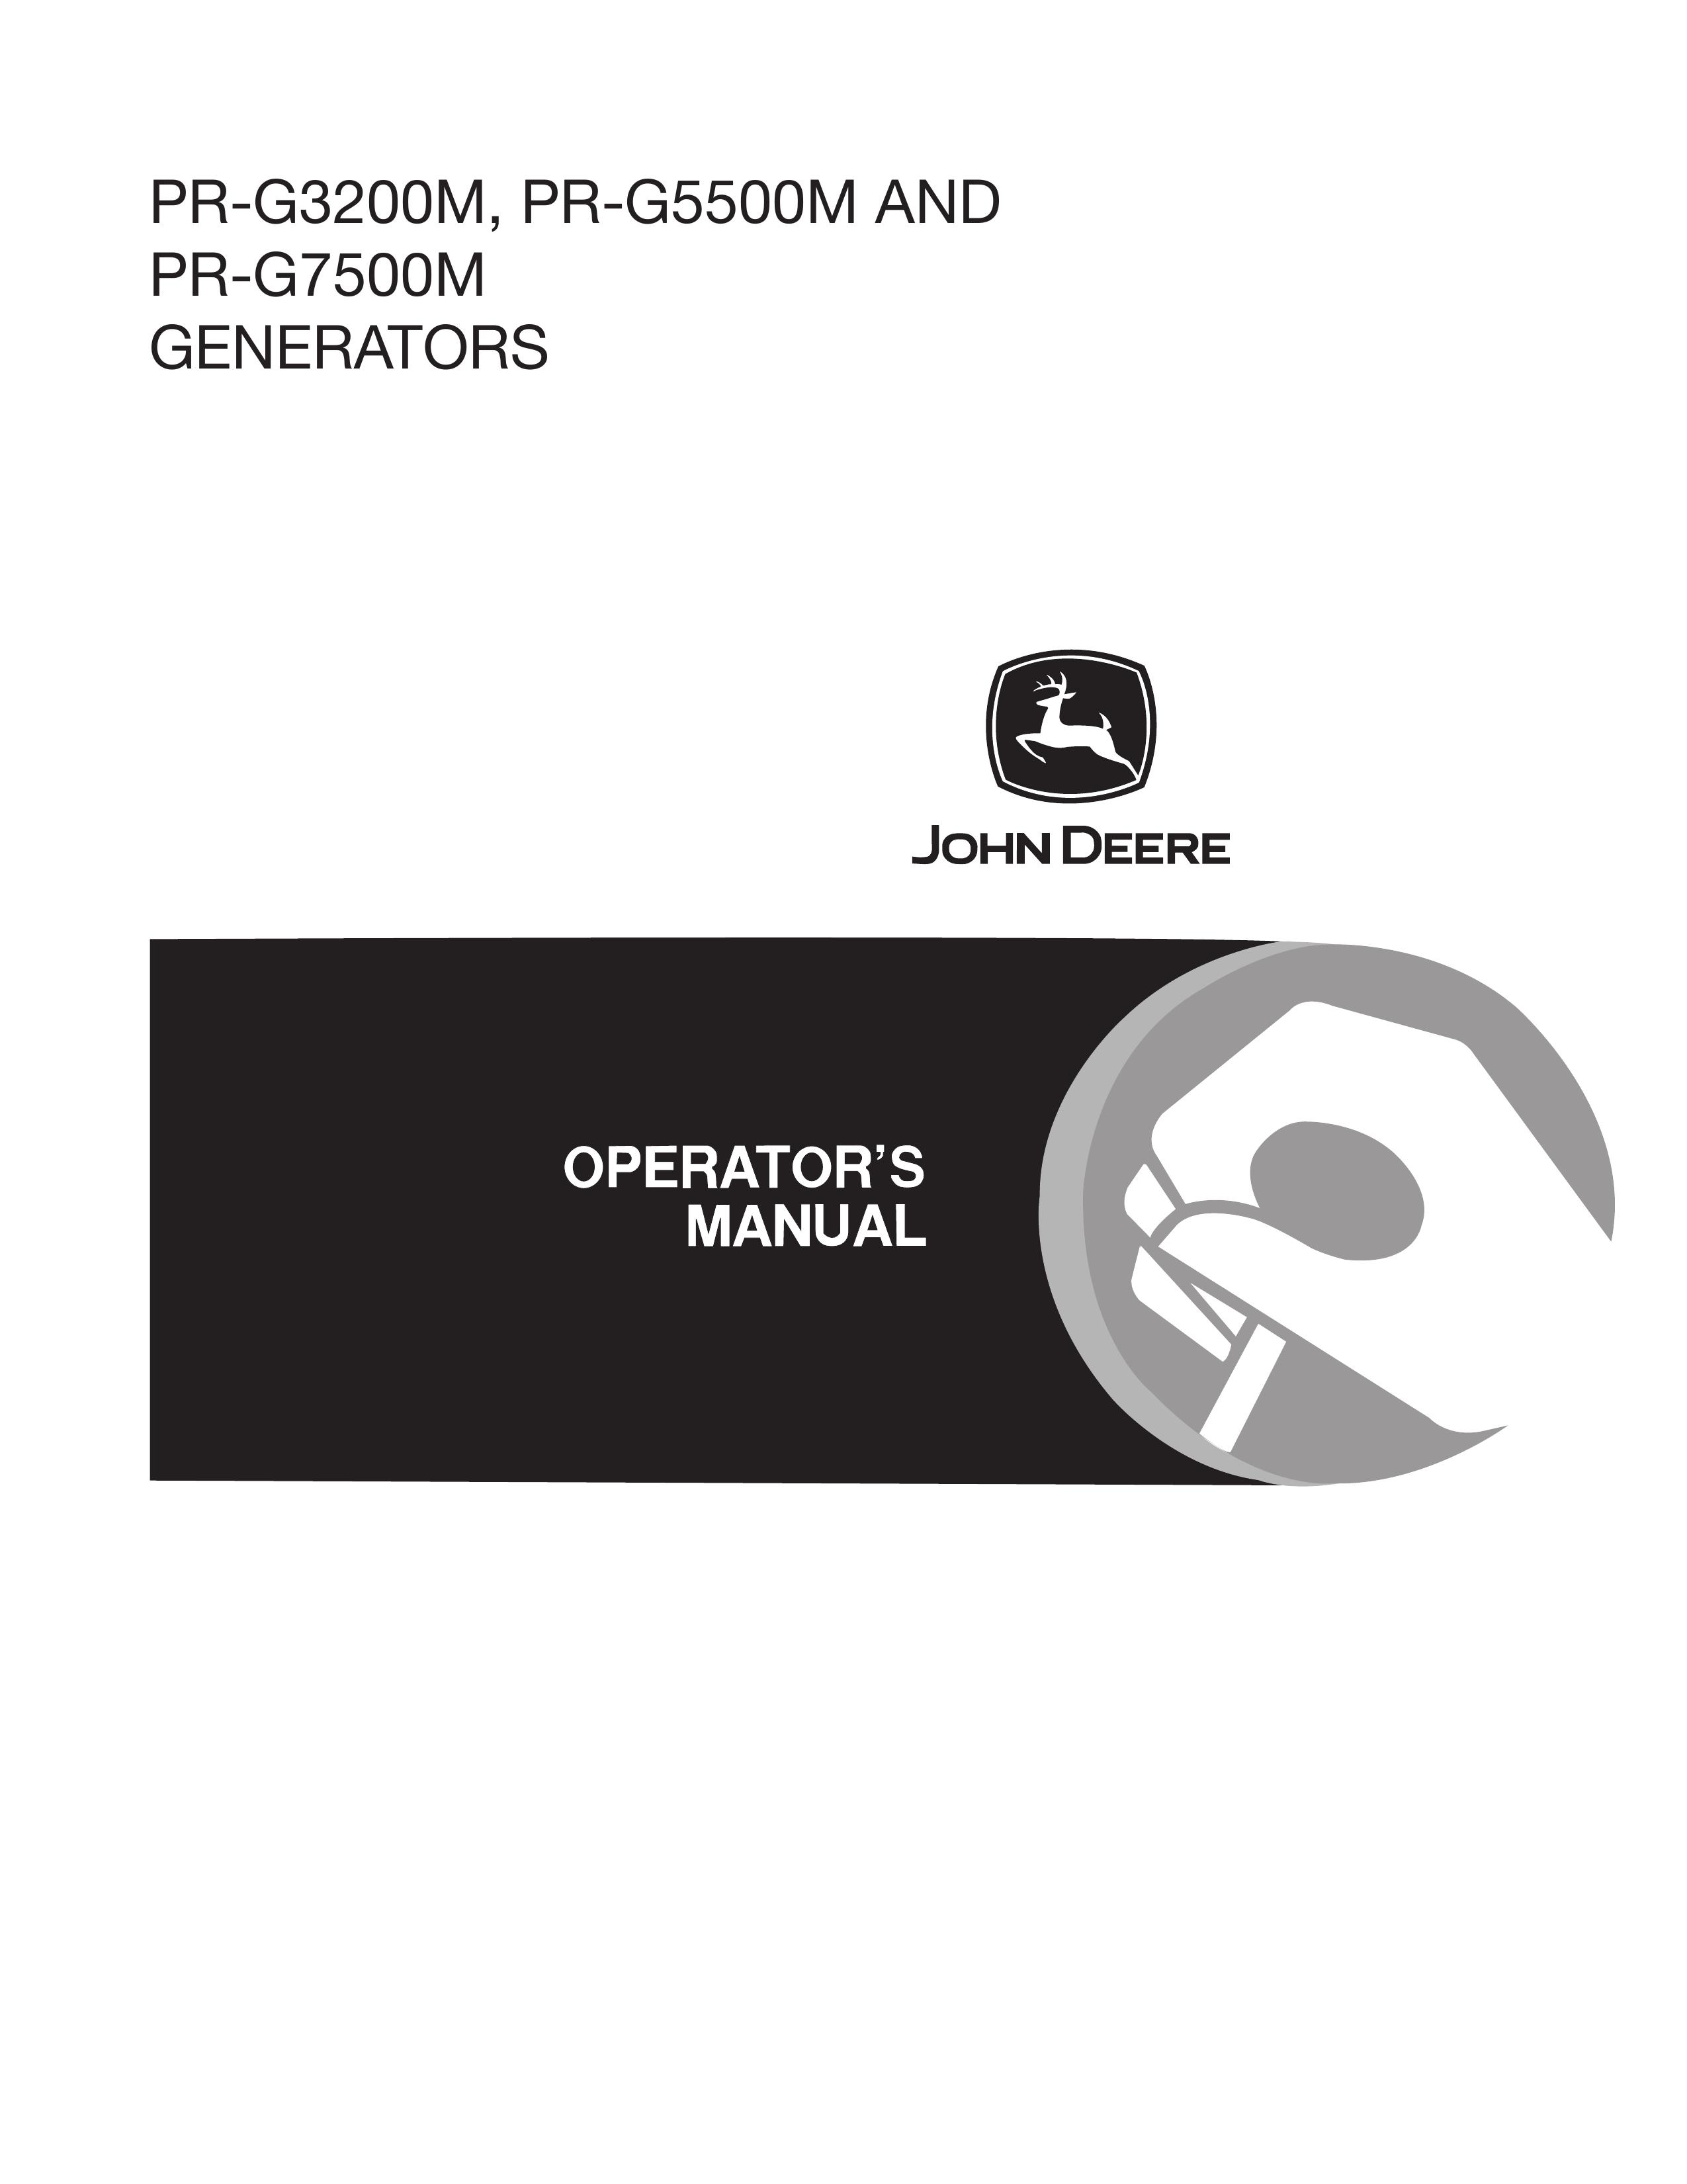 John Deere PR-G5500M Portable Generator User Manual